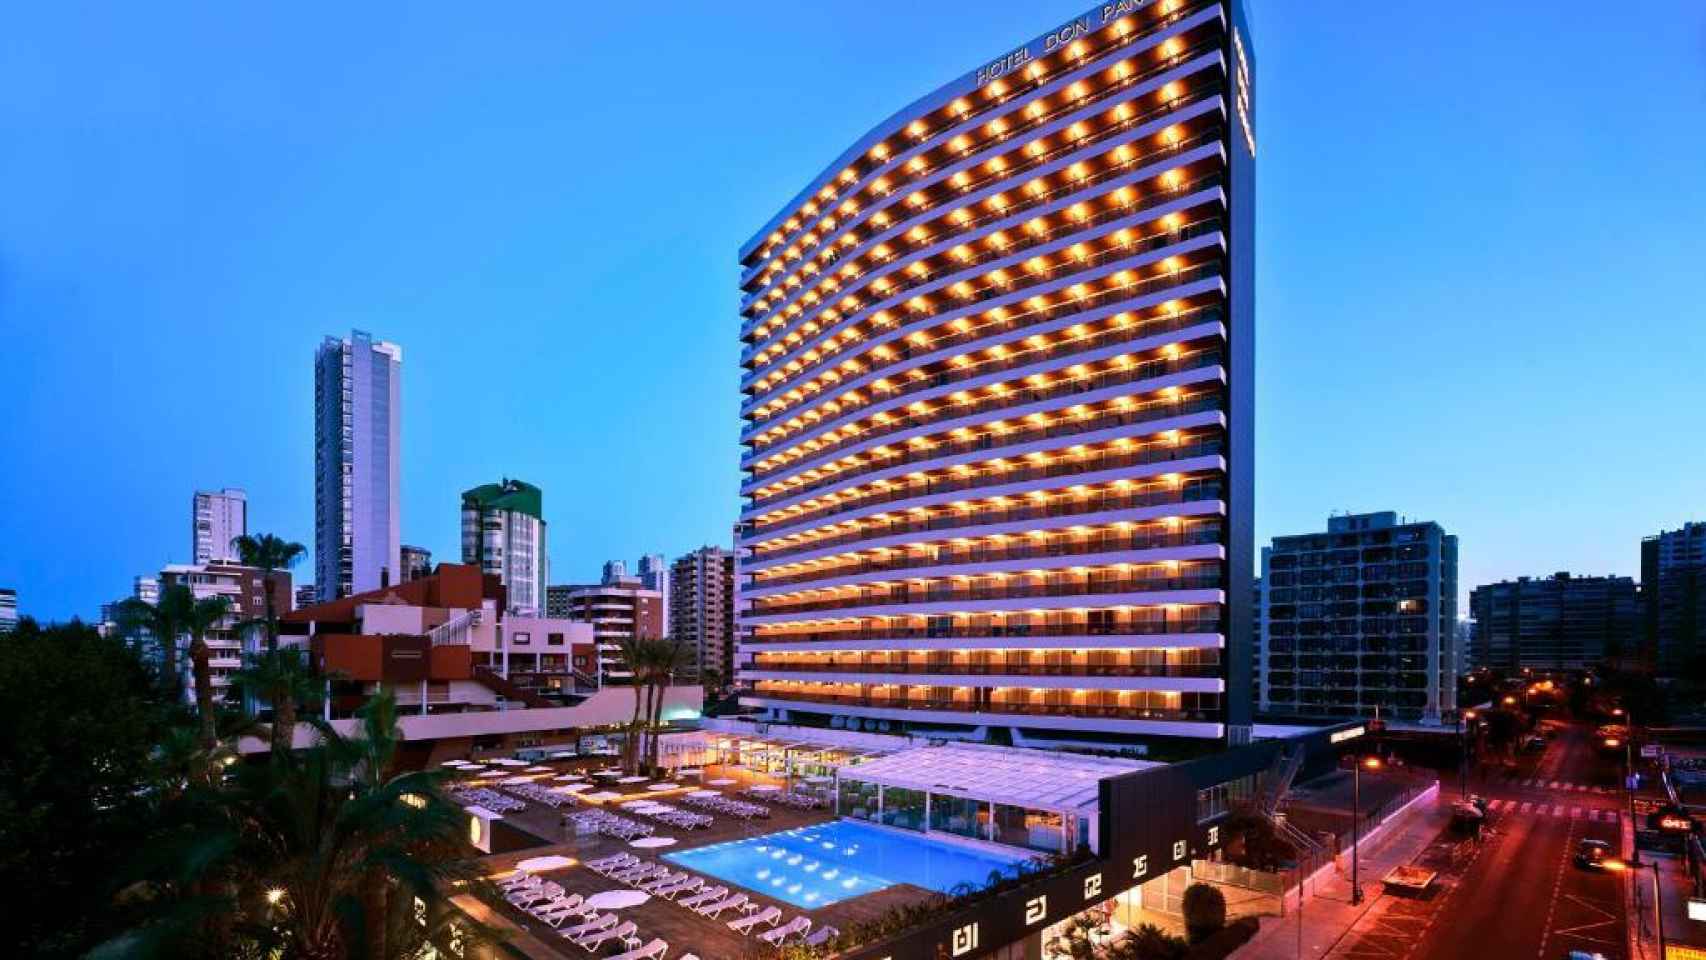 El hotel Don Pancho de Benidorm, distinguido con la placa Docomomo 2021.